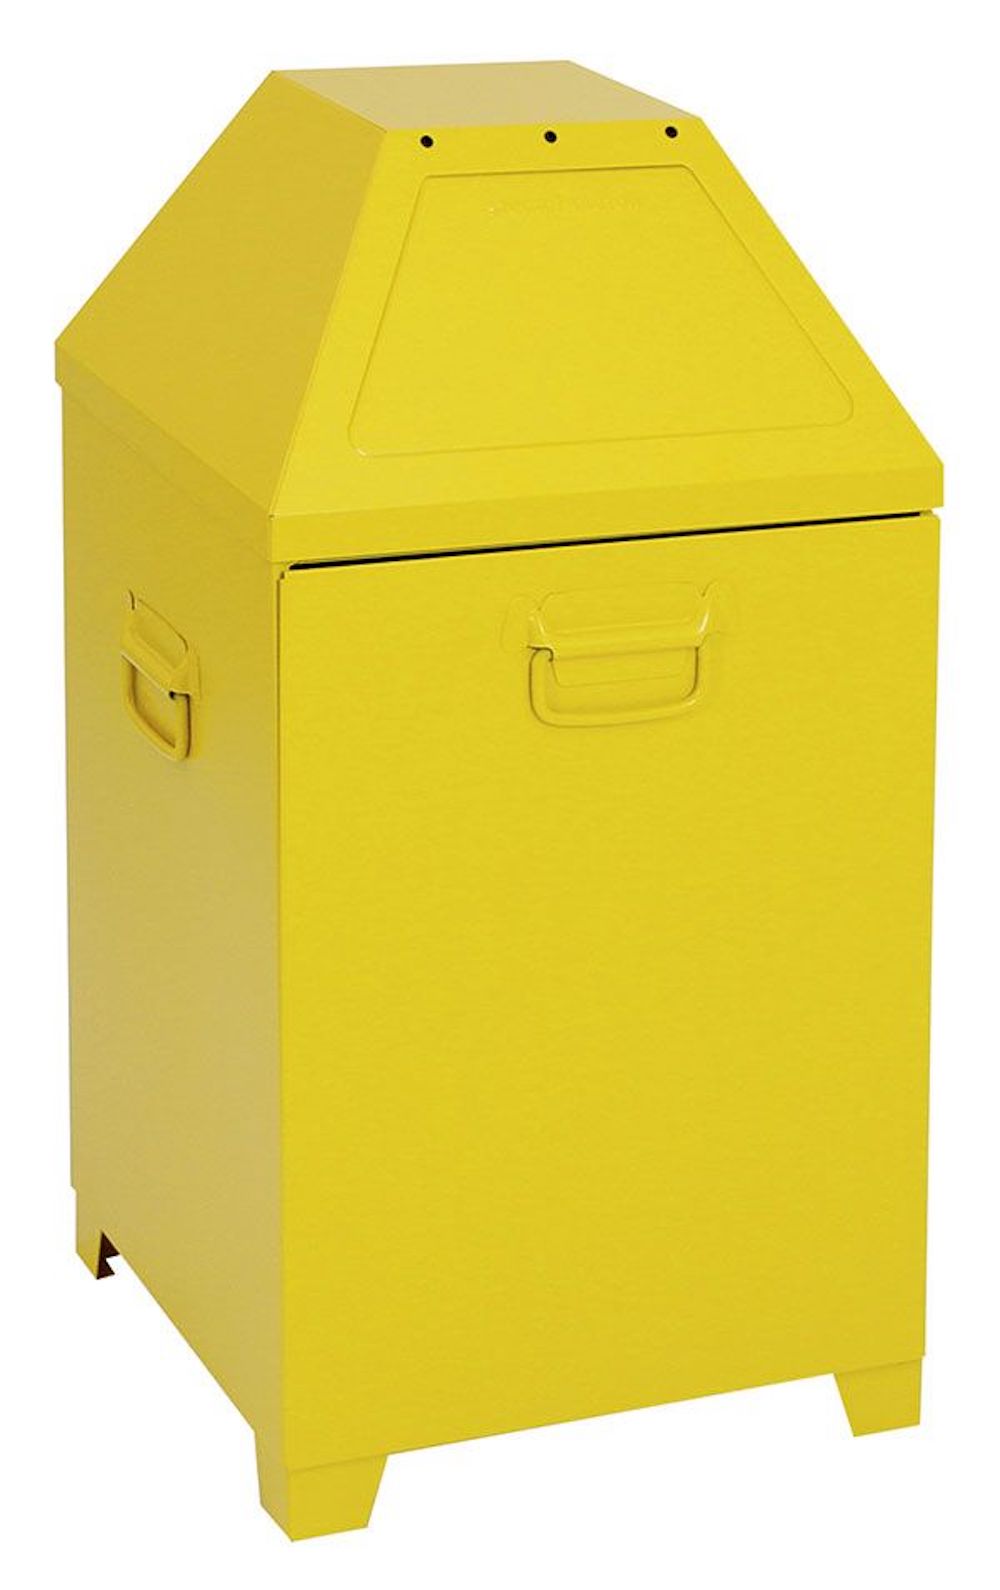 Abfallbehälter mit selbstschließenden Doppel-Einwurfklappen | 95 Liter, HxBxT 87x45x45cm | Kopfelement abnehmbar | Signalgelb